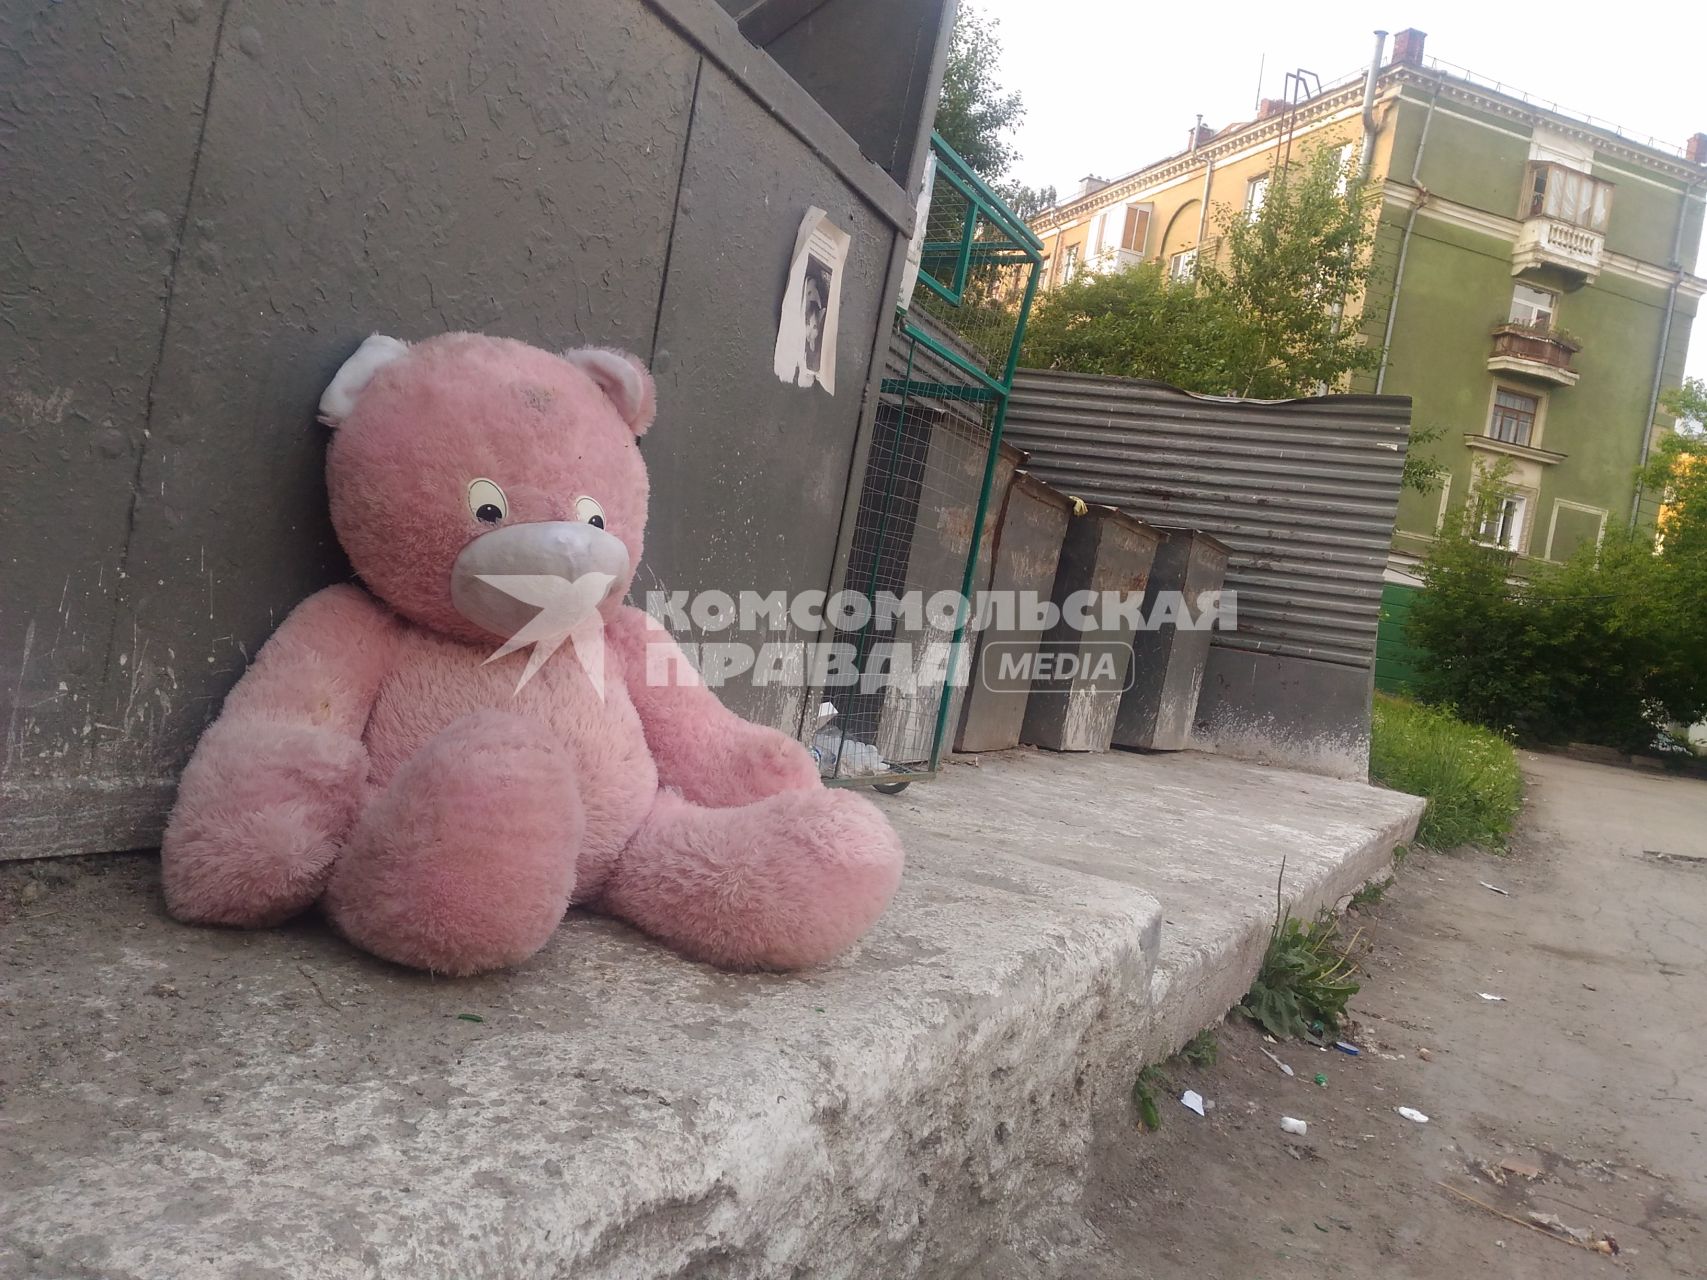 Екатеринбург. Большой розовый плюшевый медведь на помойке